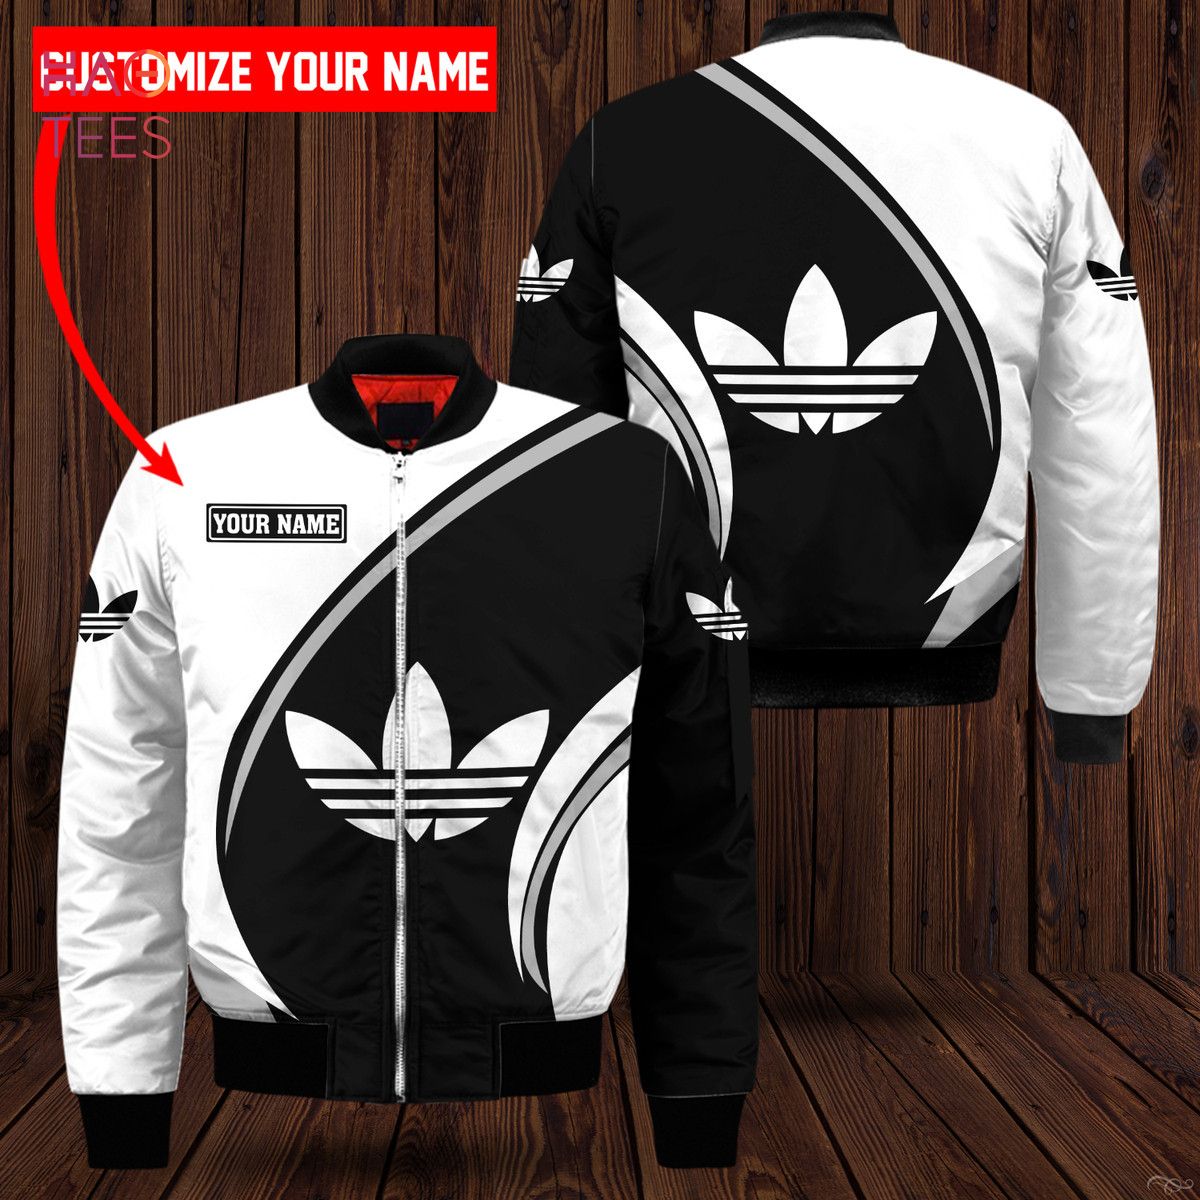 NEW Adidas Luxury Brand White Mix Black Bomber Jacket Limited Edition